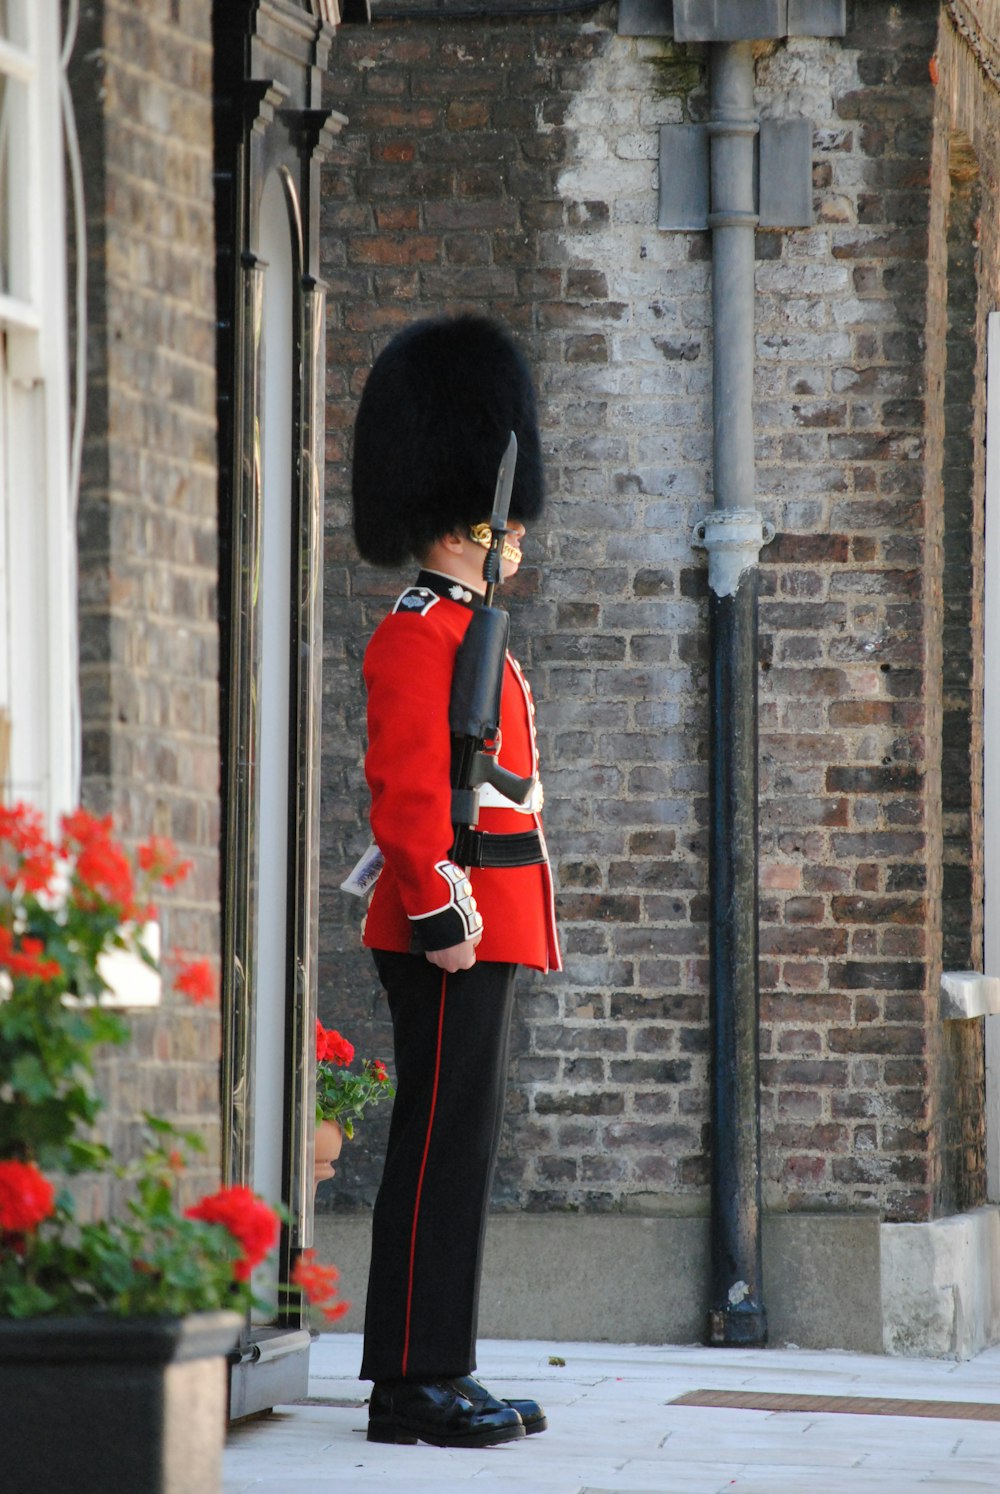 pessoa em uniforme vermelho e preto em pé perto do poste de metal preto durante o dia